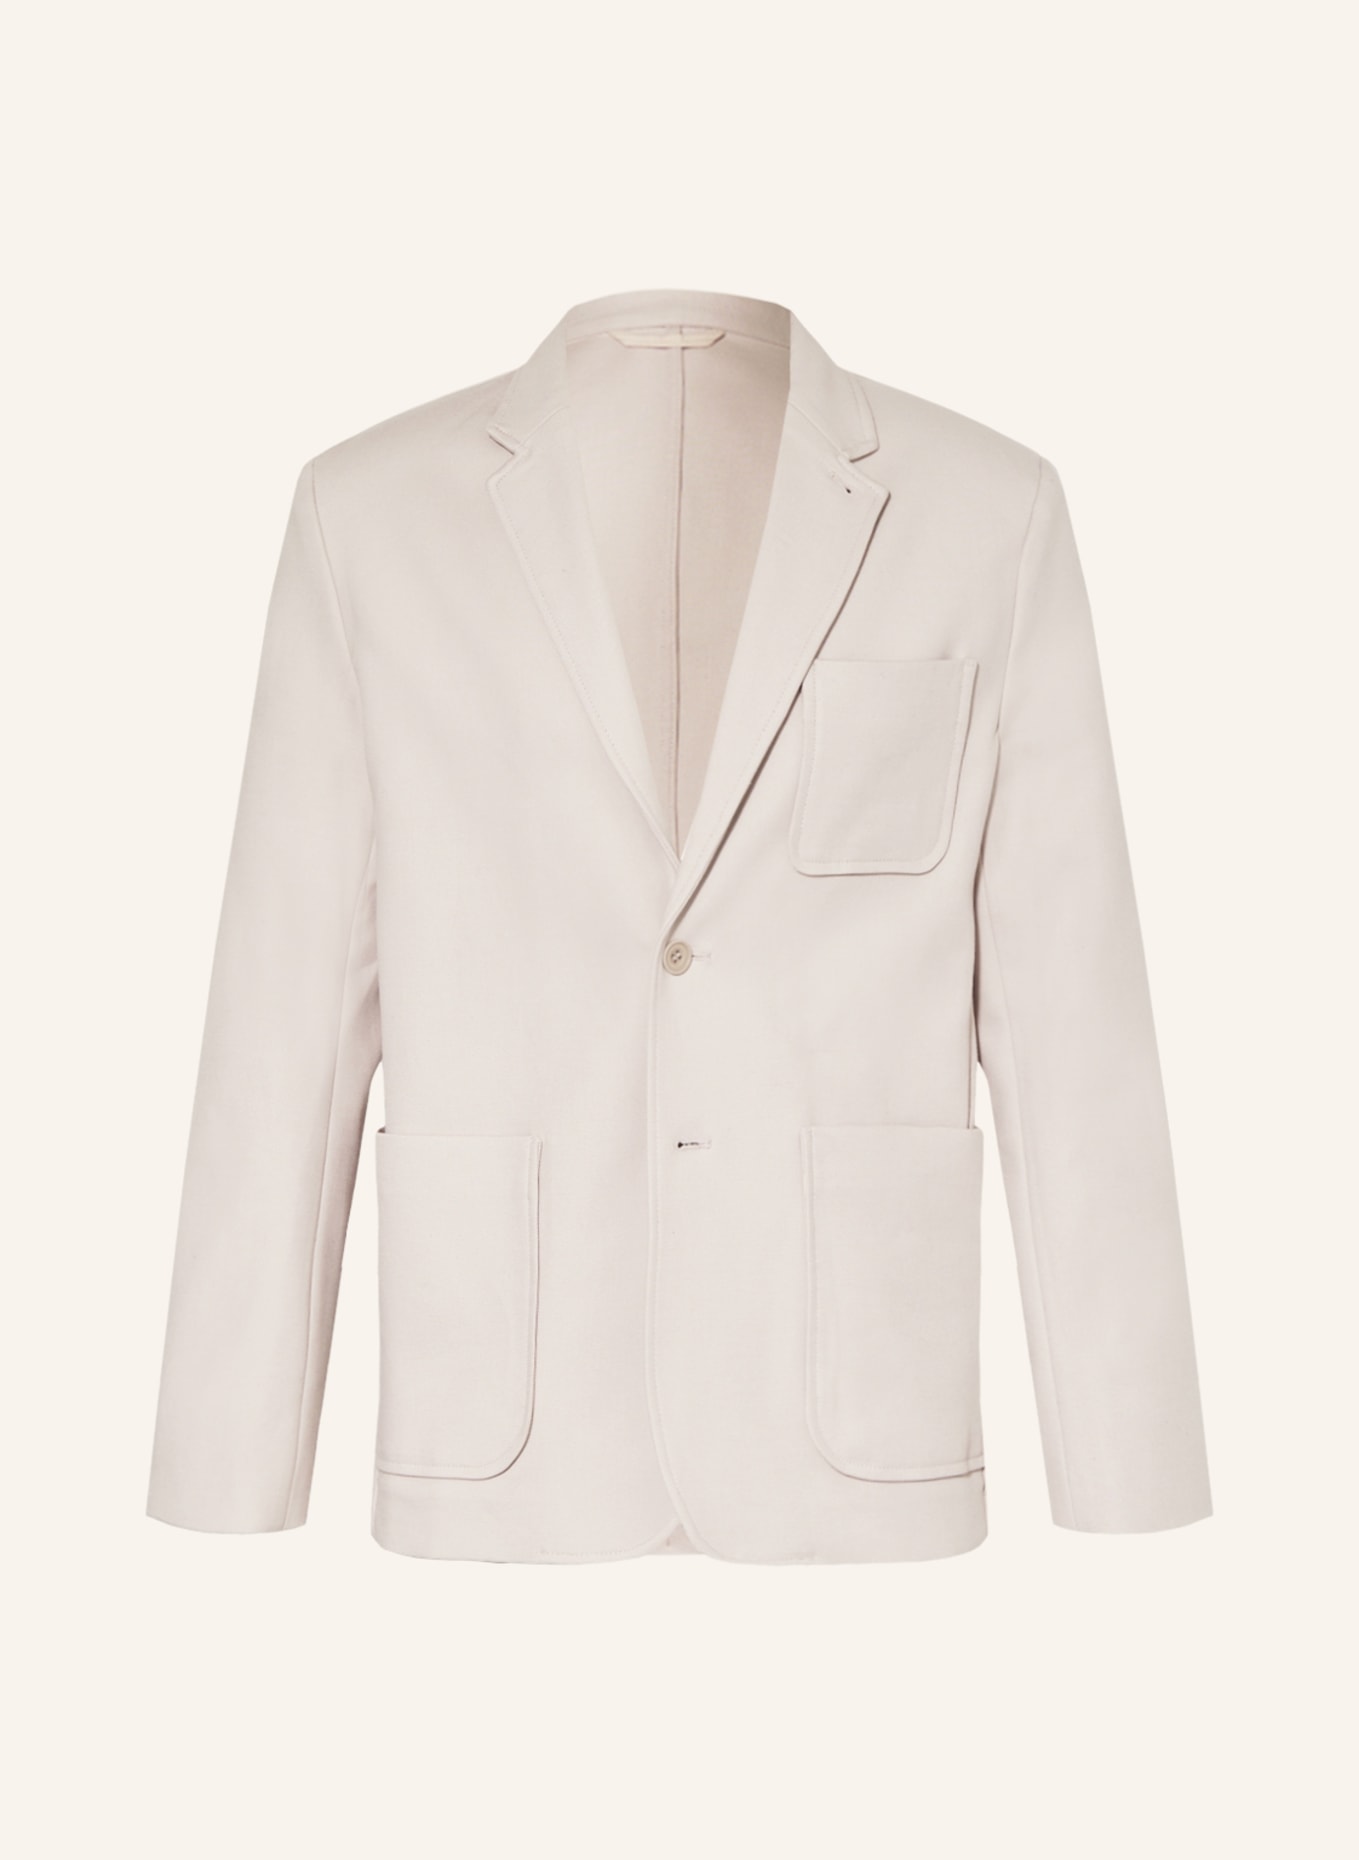 COS Tailored jacket regular fit, Color: BEIGE (Image 1)